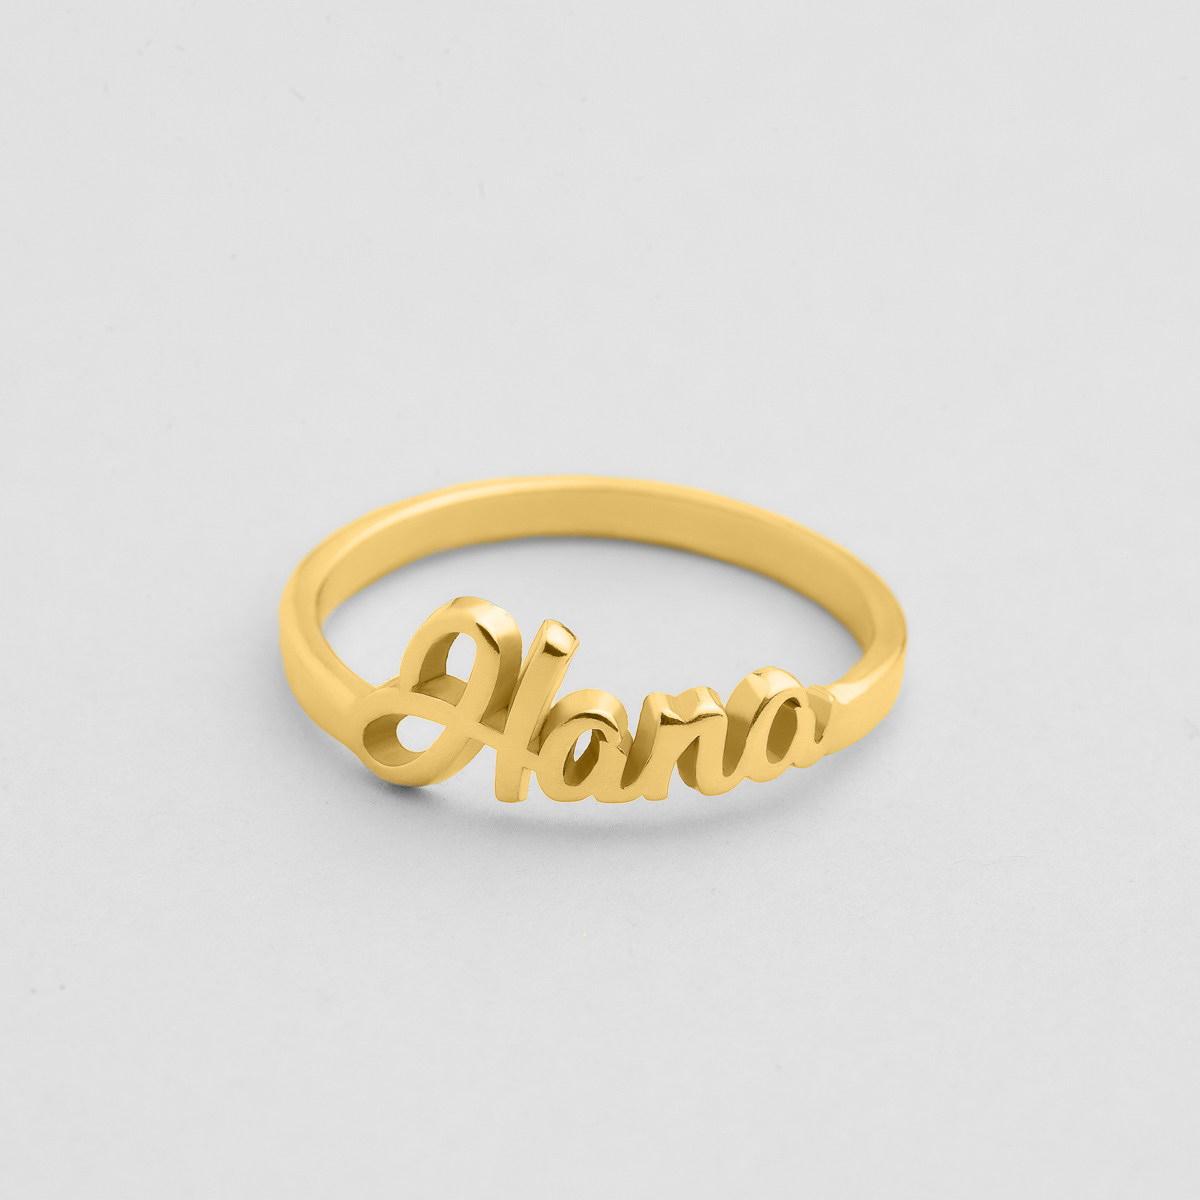 Custom Name Ring, Gold Name Ring, Prince Crown Name Ring, Wedding Gift,  Custom Engraved Ring, Personalized Name Rings, Gift for Her - Etsy |  Engraved rings, Name rings, Hand stamped ring